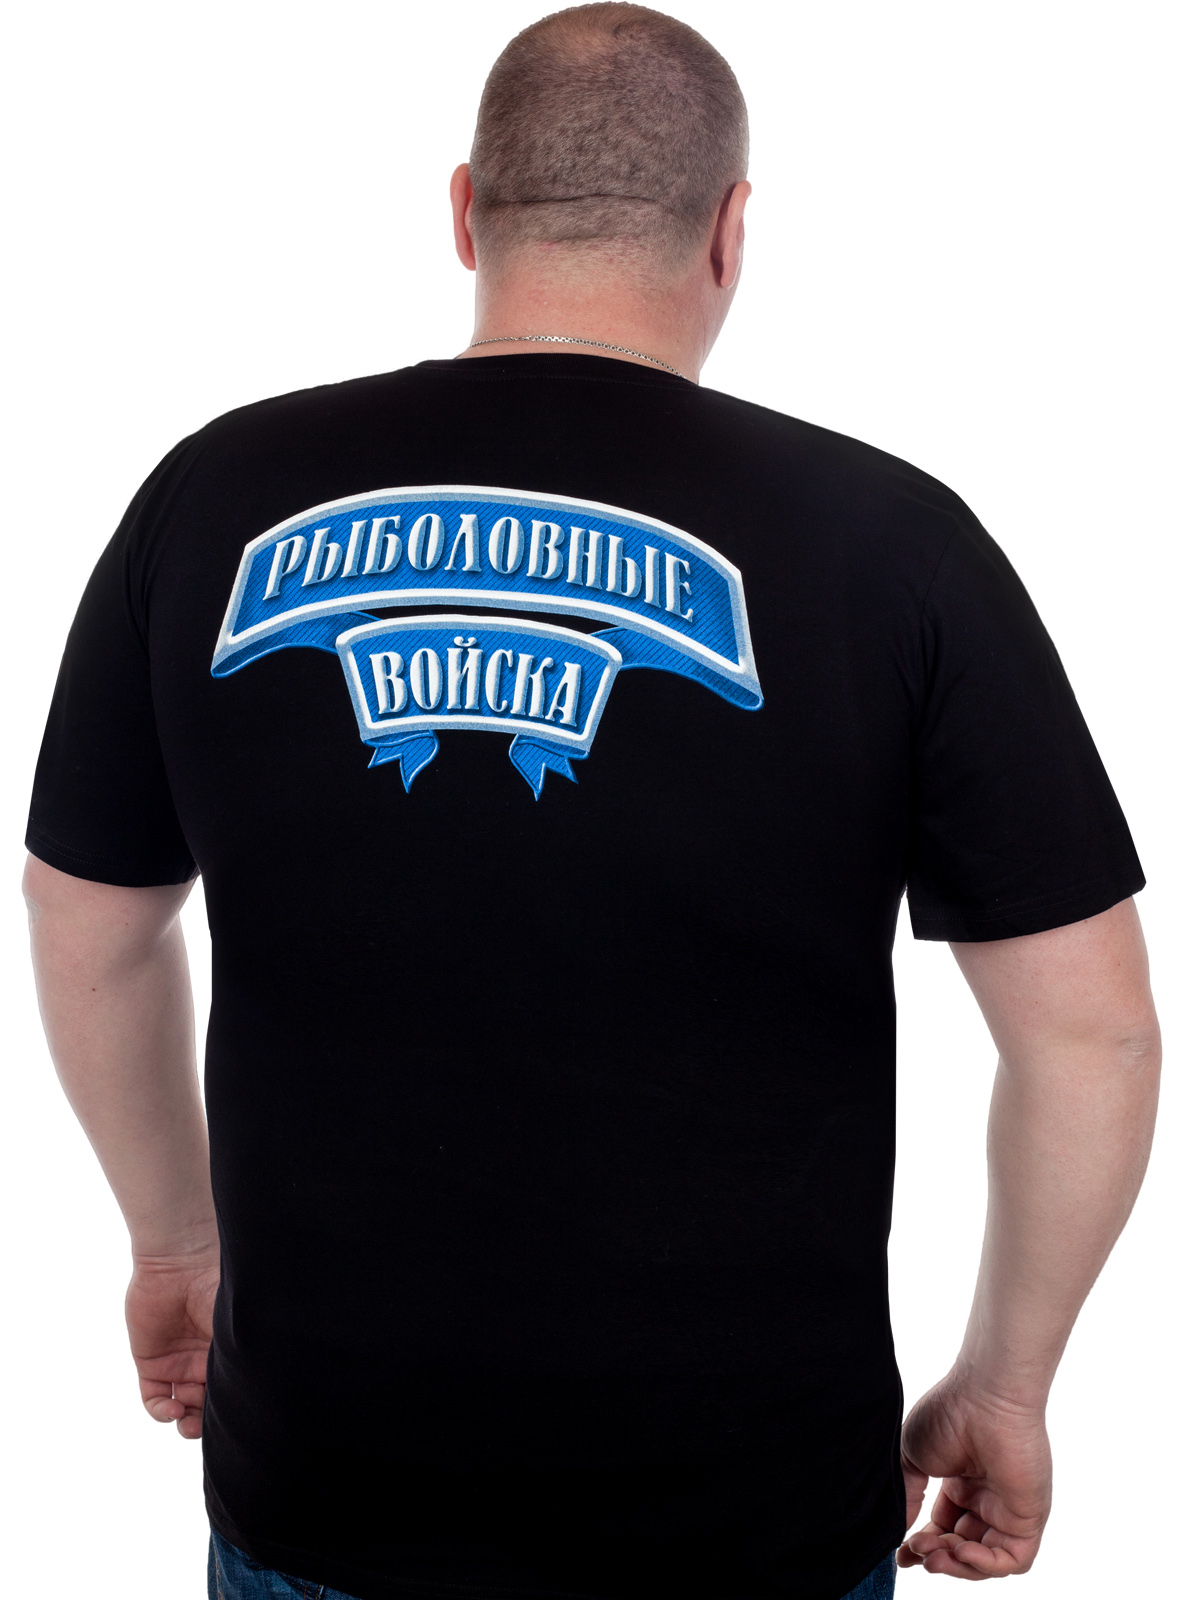 Мужская футболка больших размеров Рыболовные войска – купить онлайн